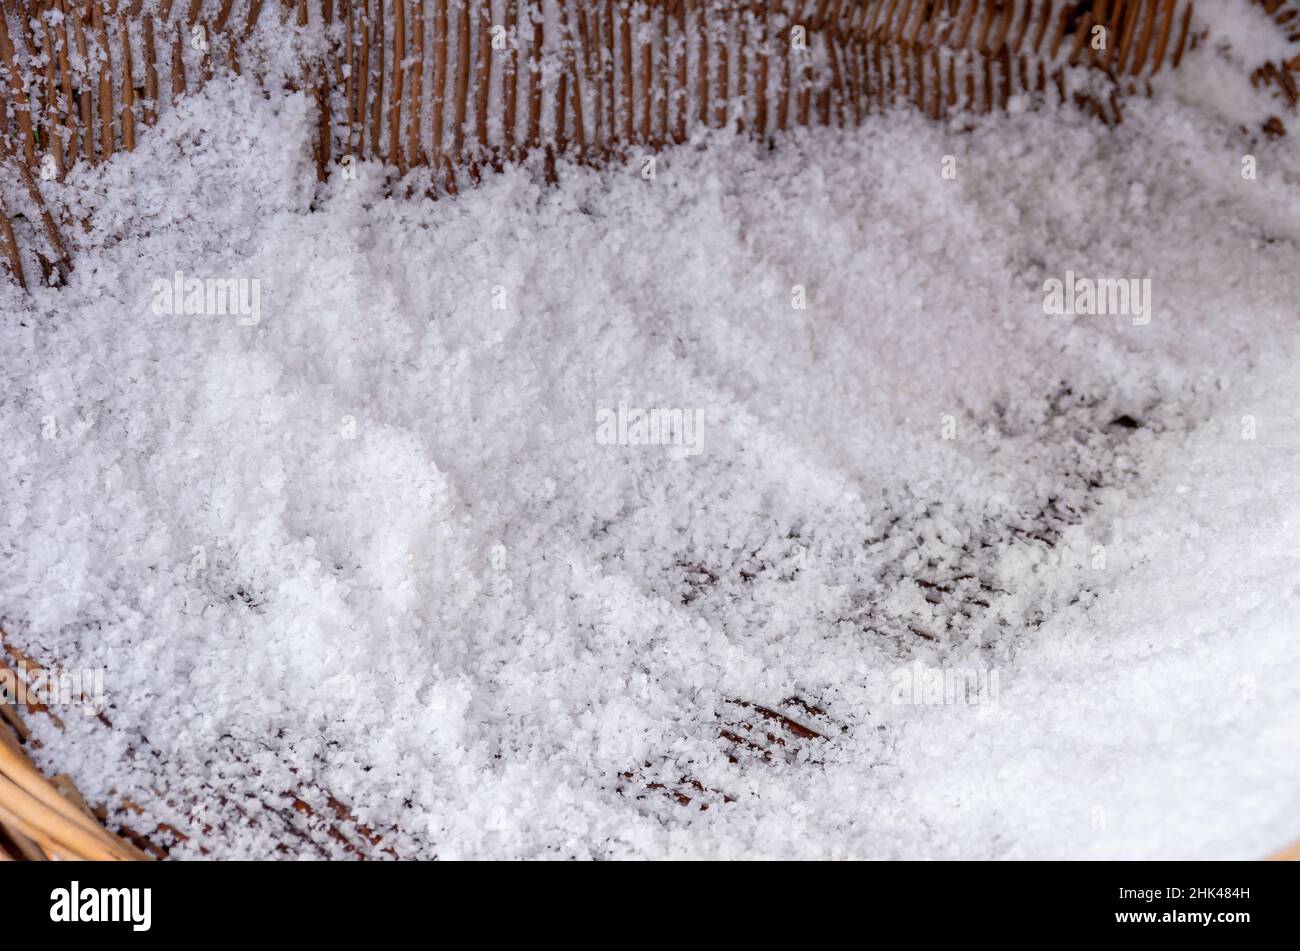 Sel frais ou chlorure de sodium, en utilisant l'exemple du sel traditionnellement fait à la main à partir de saumure. Banque D'Images